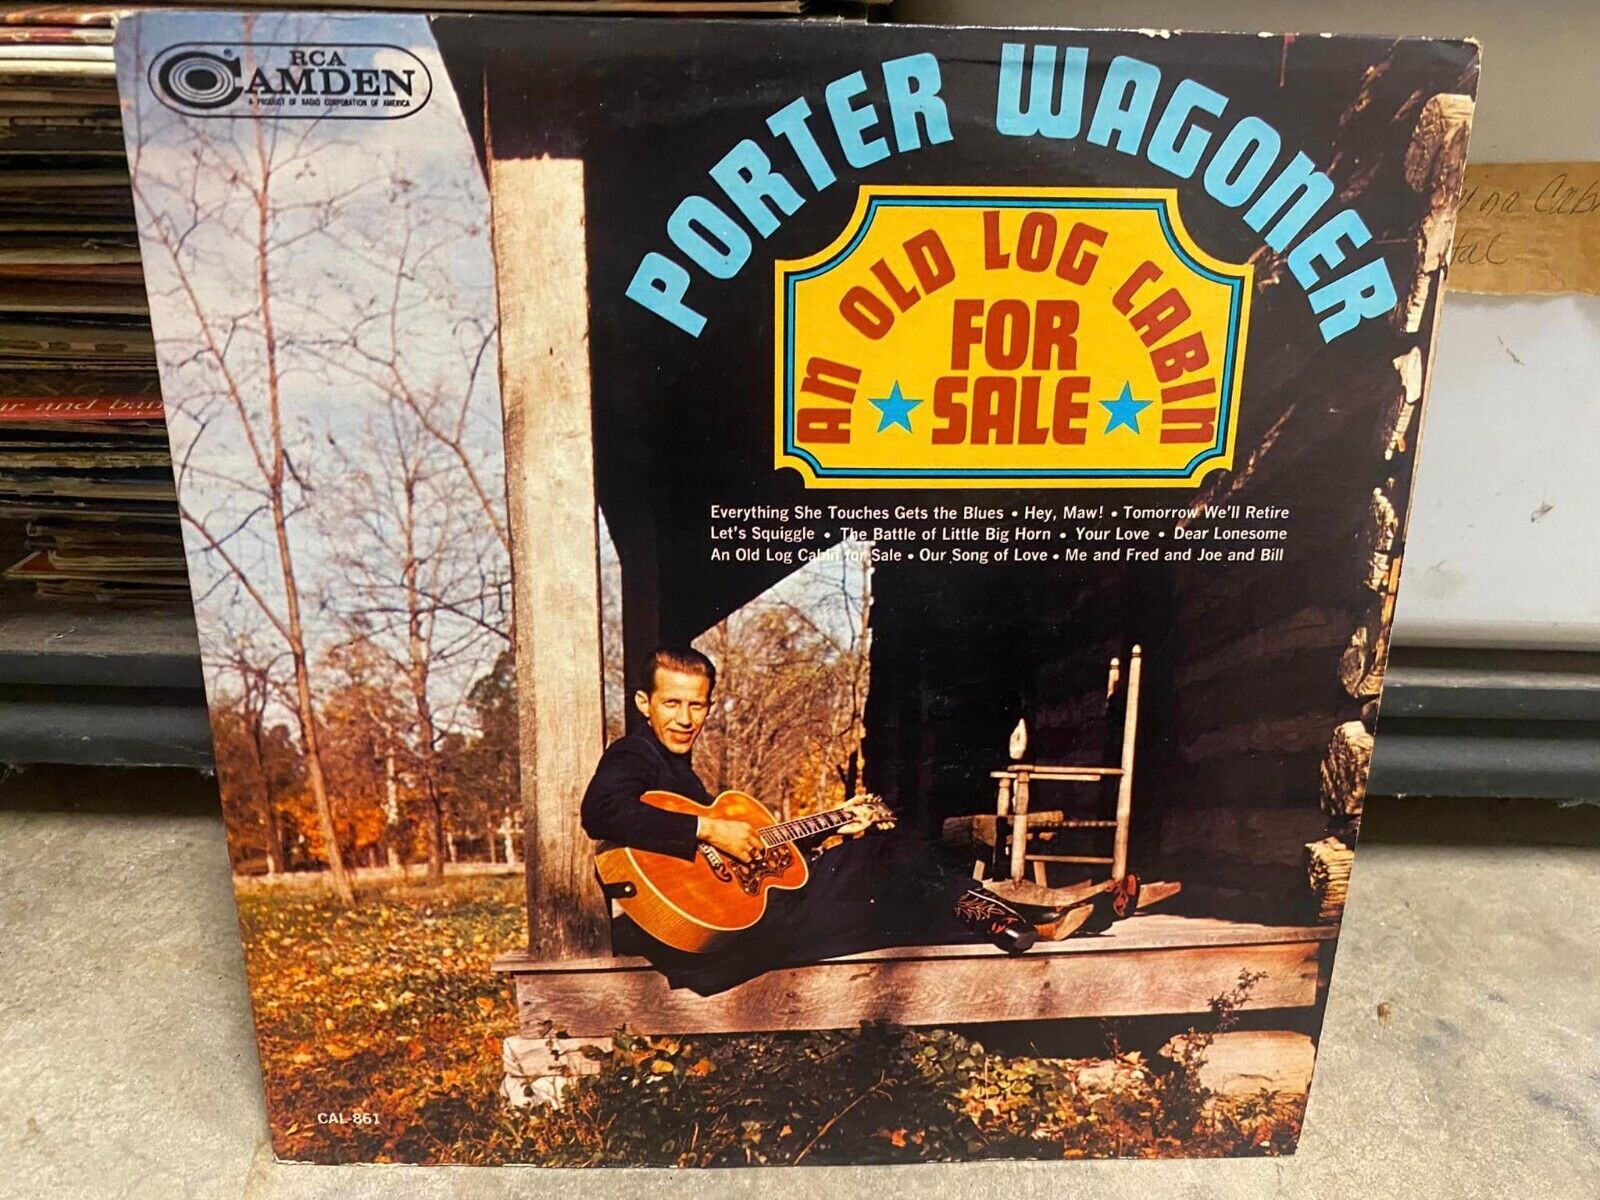 Porter Wagoner An Old Log Cabin For Sale - Vintage Vinyl Record